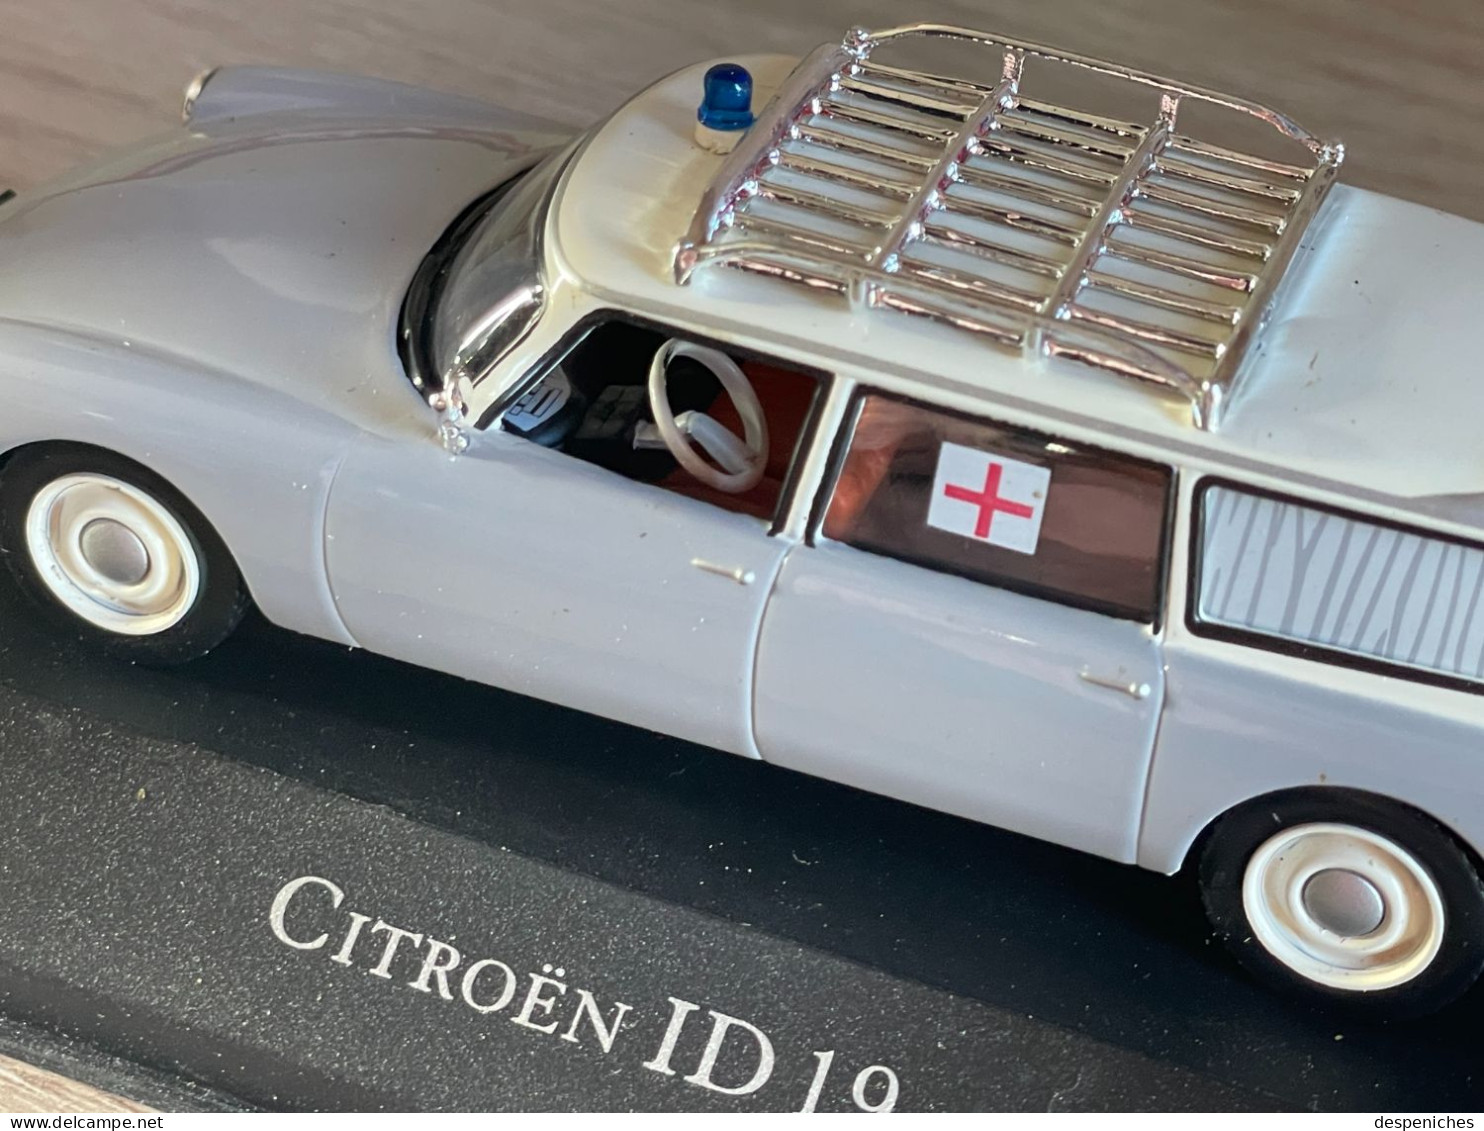 Atlas Citroën ID 19 Ambulance neuve dans sa Boîte échelle 1/43e